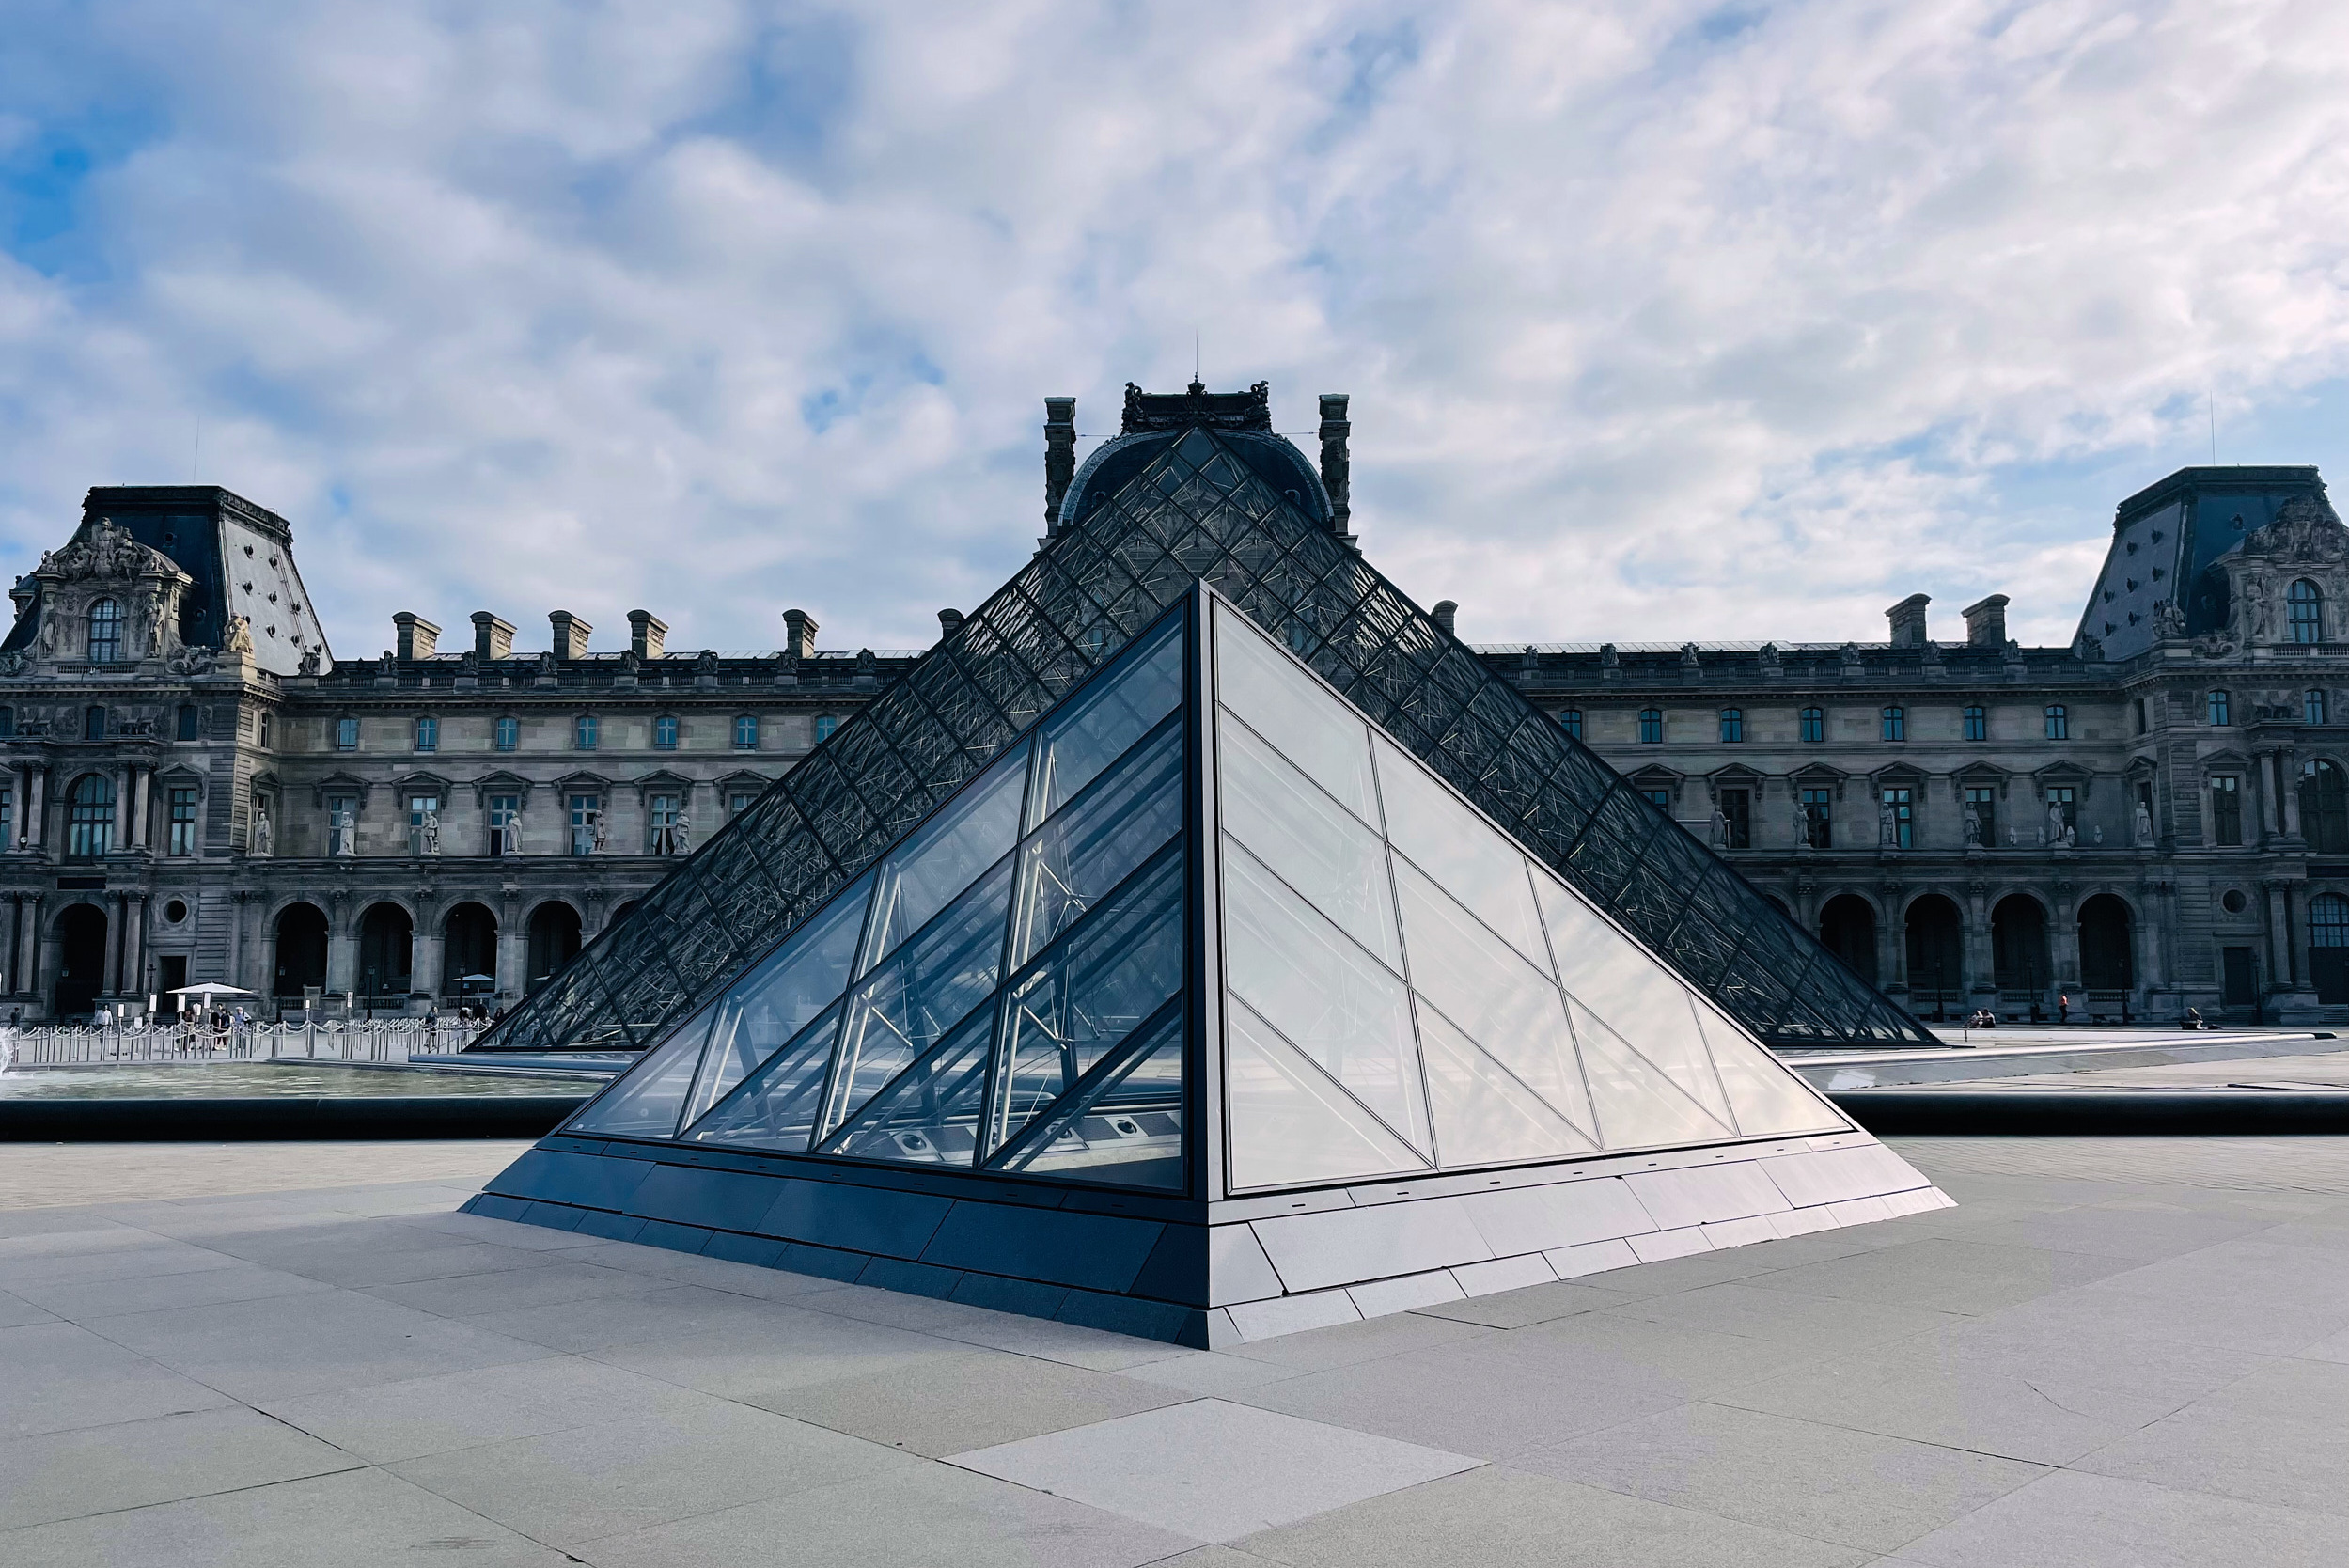 La Galerie is a new charming Louis Vuitton Museum